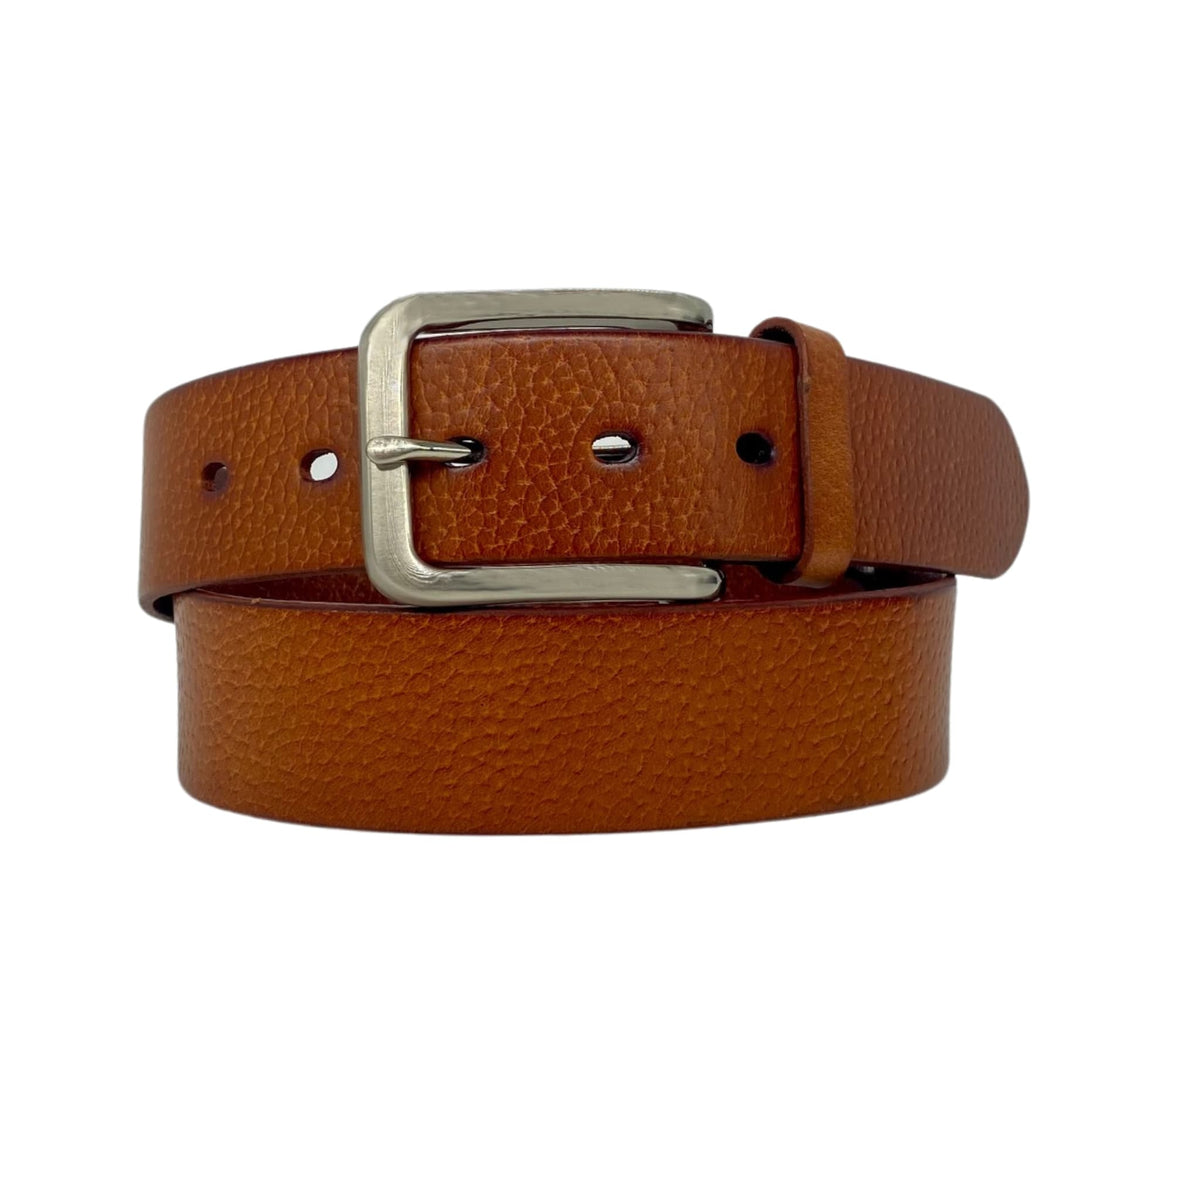 JARROD - Light Tan Belt - Silver Buckle - Genuine Leather | Beltnbags Australia 